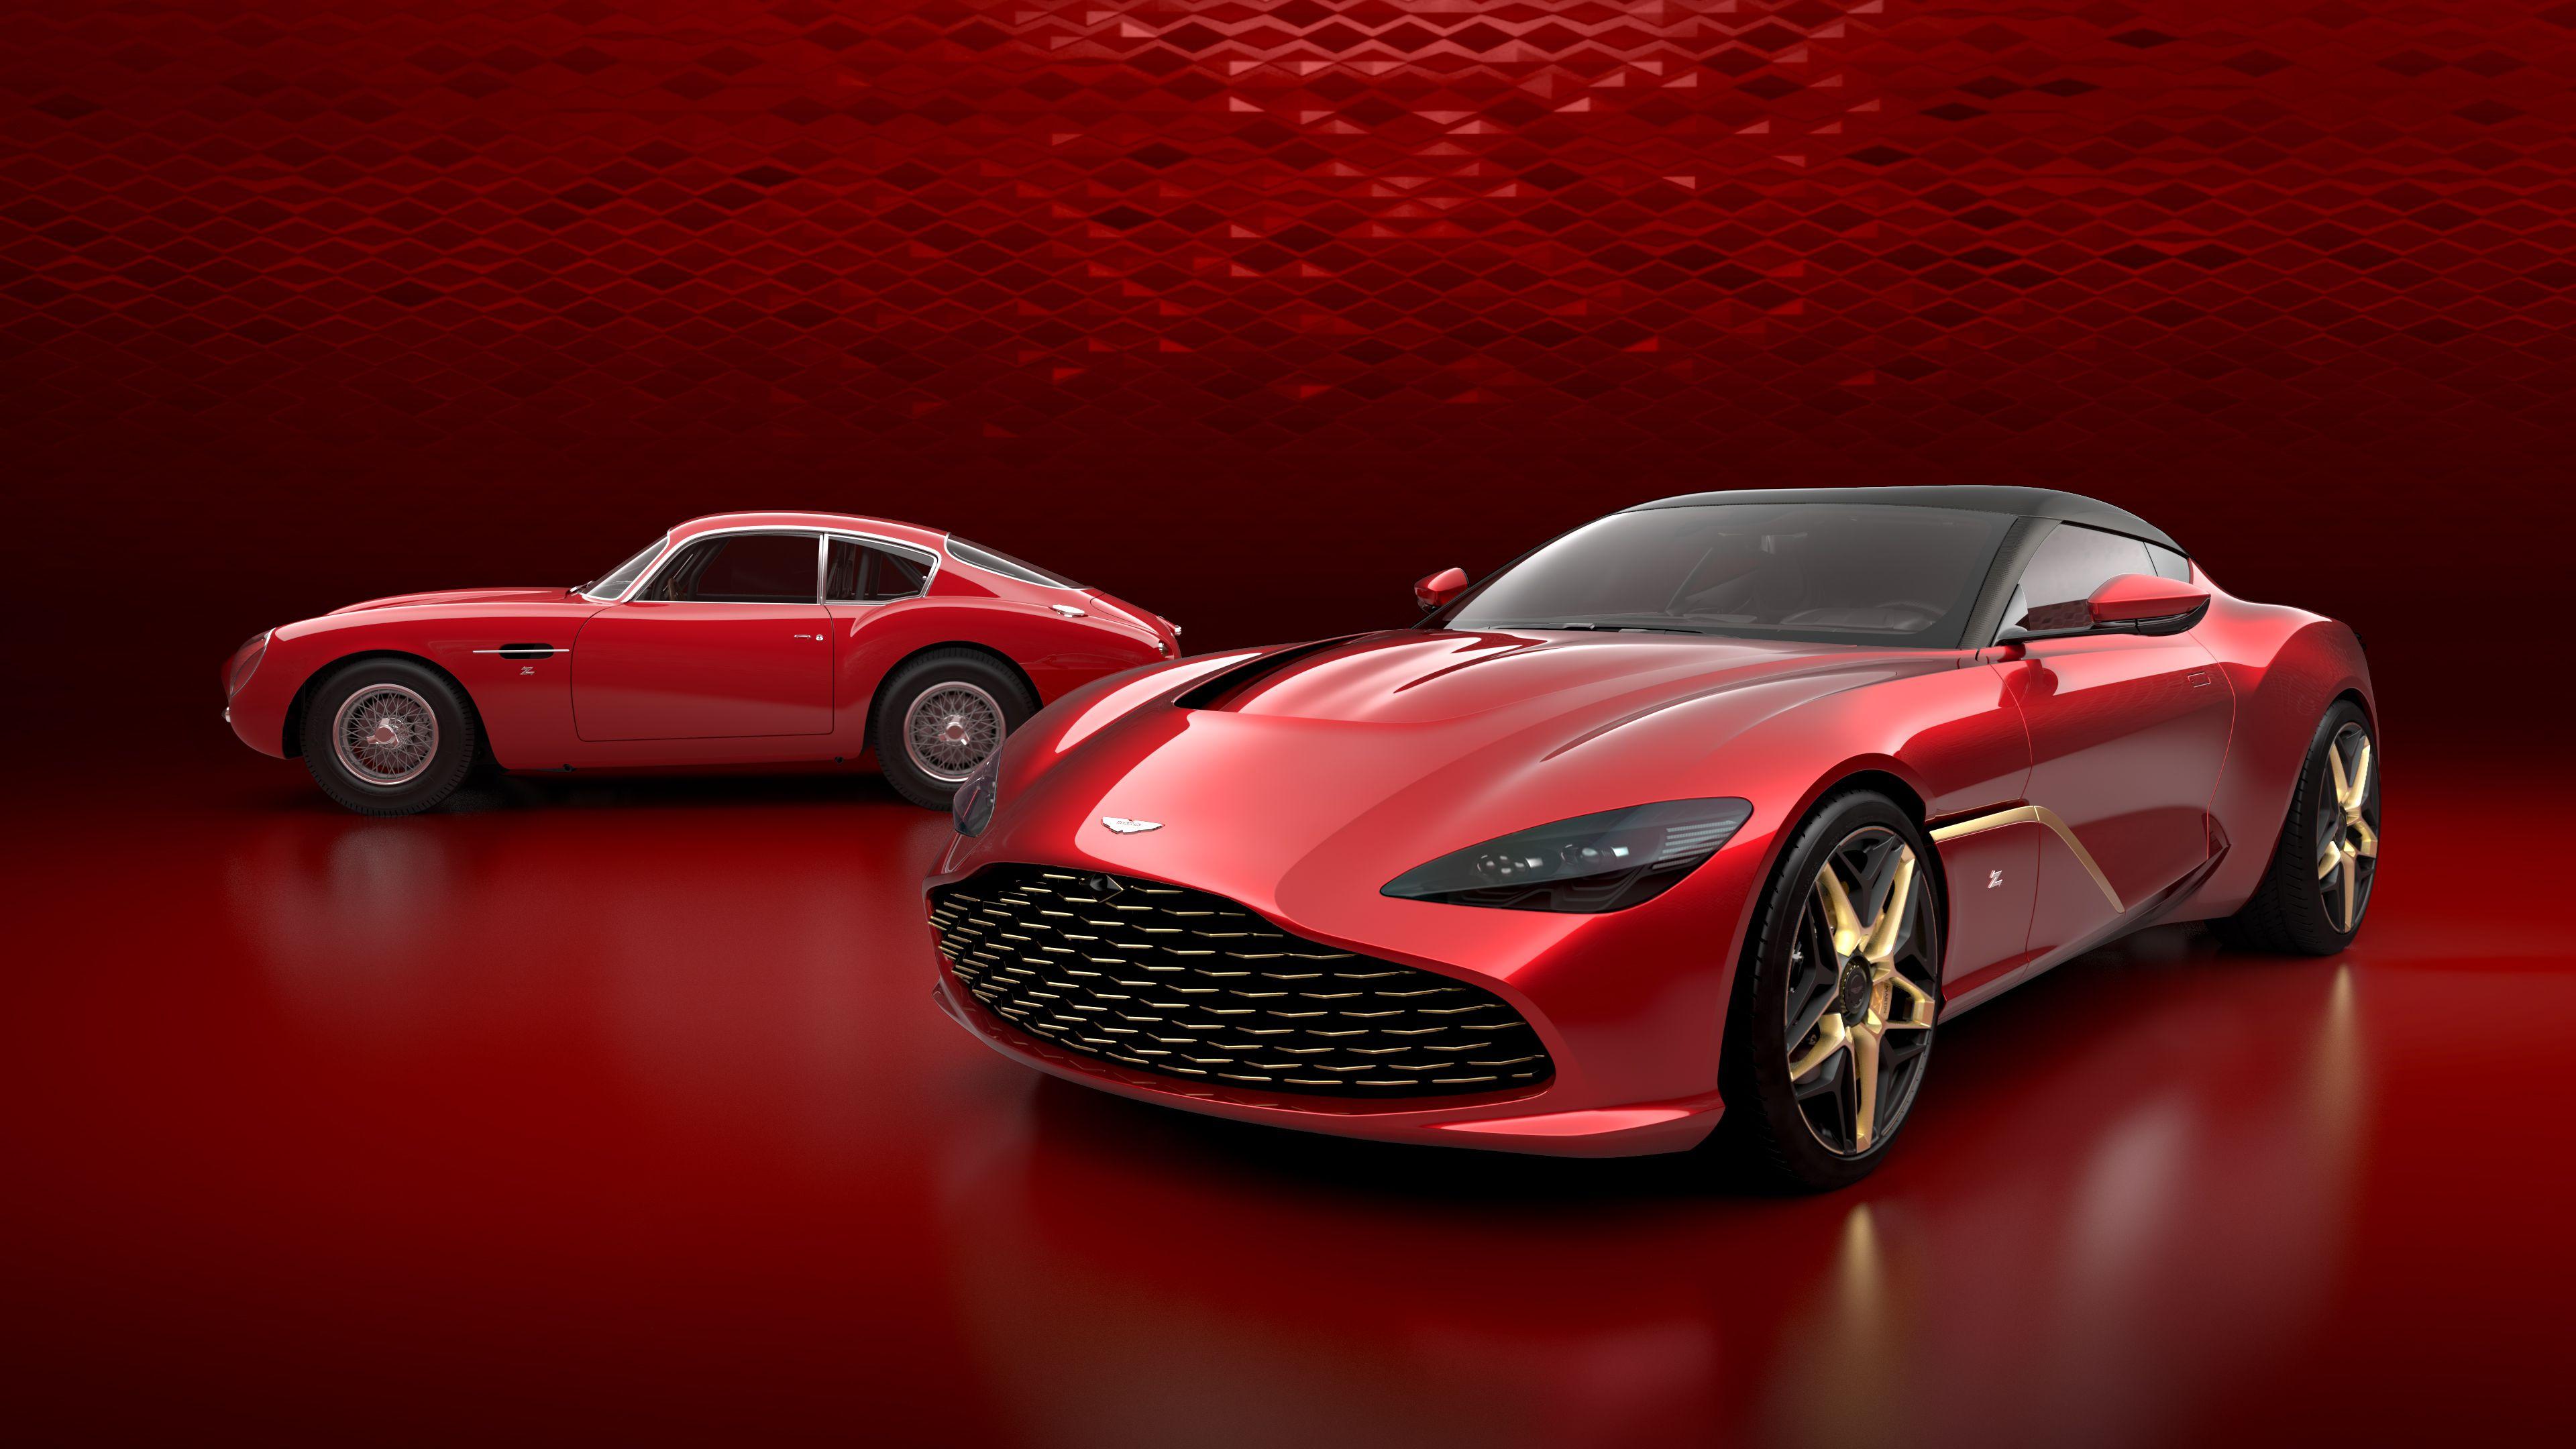 Aston Martin: Pogonski motor dolazi u vidu 5,2 litrenog V12 s bi-turbo tehnologijom - Avaz